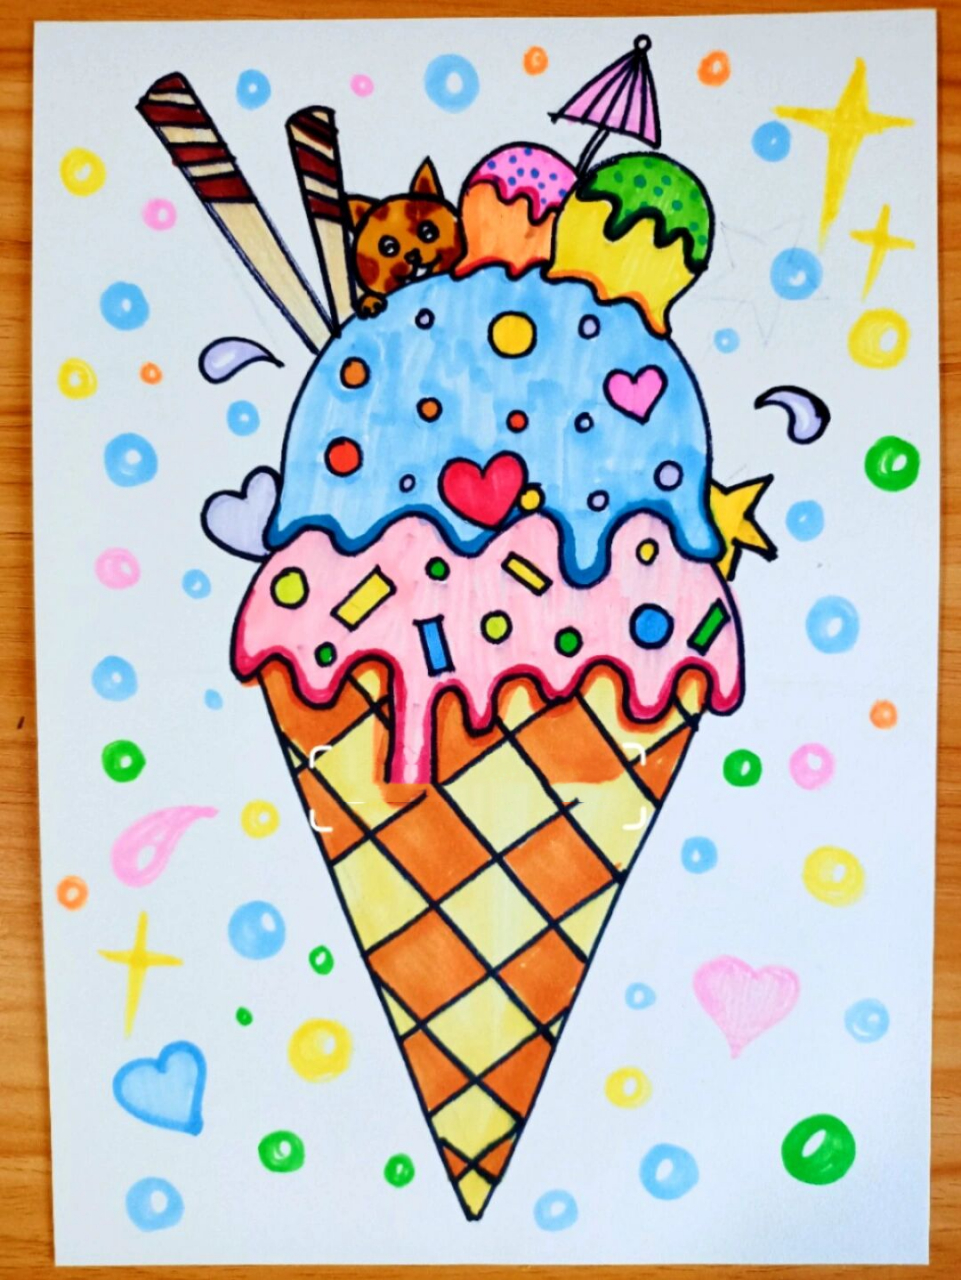 画冰淇淋简笔画彩色图片